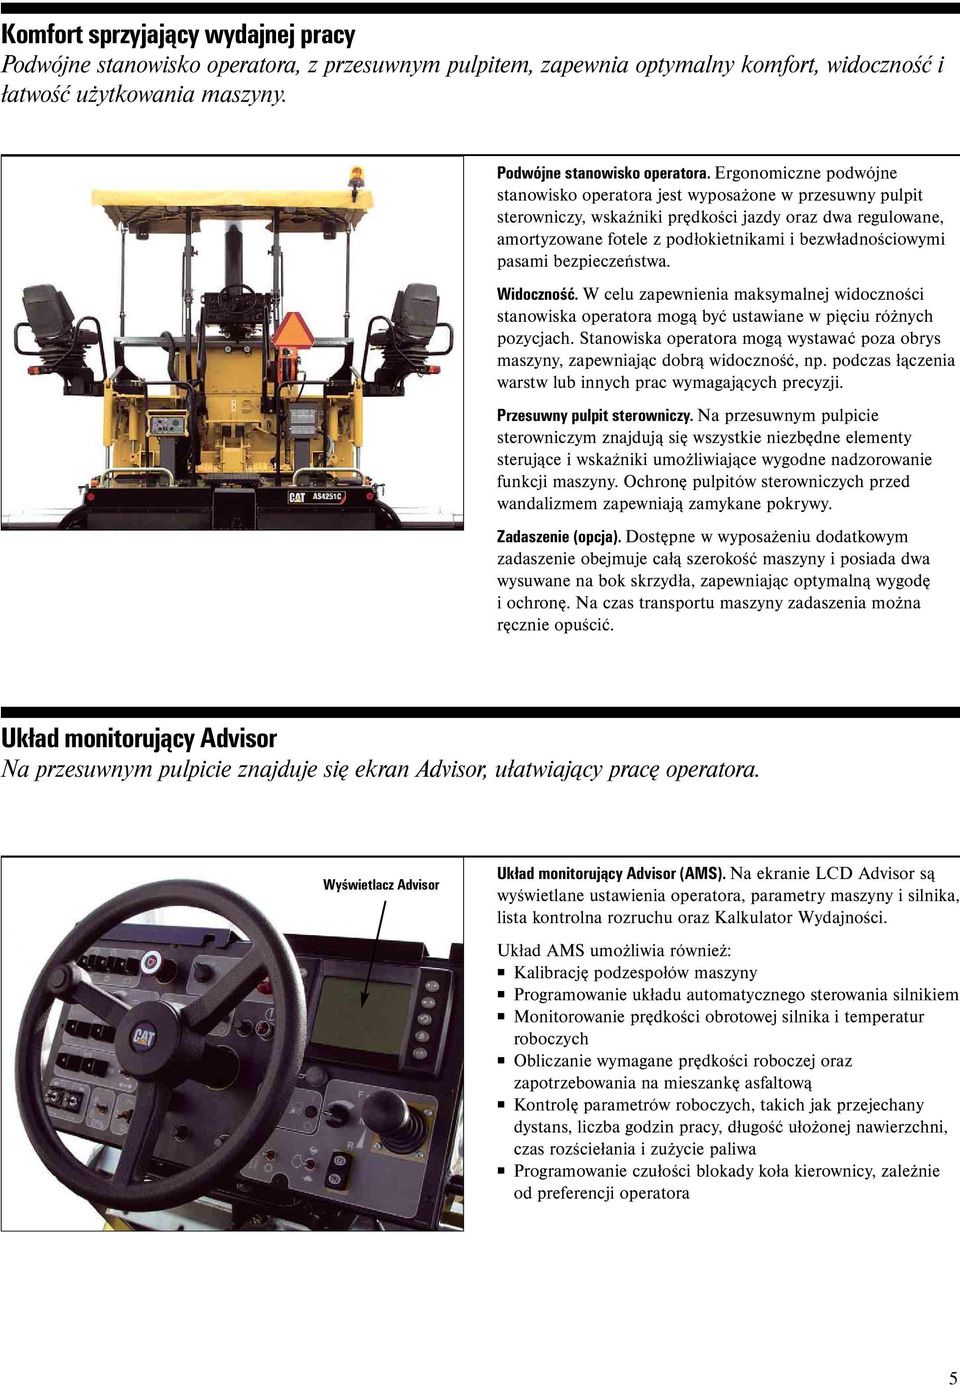 Ergonomiczne podwójne stanowisko operatora jest wyposażone w przesuwny pulpit sterowniczy, wskaźniki prędkości jazdy oraz dwa regulowane, amortyzowane fotele z podłokietnikami i bezwładnościowymi